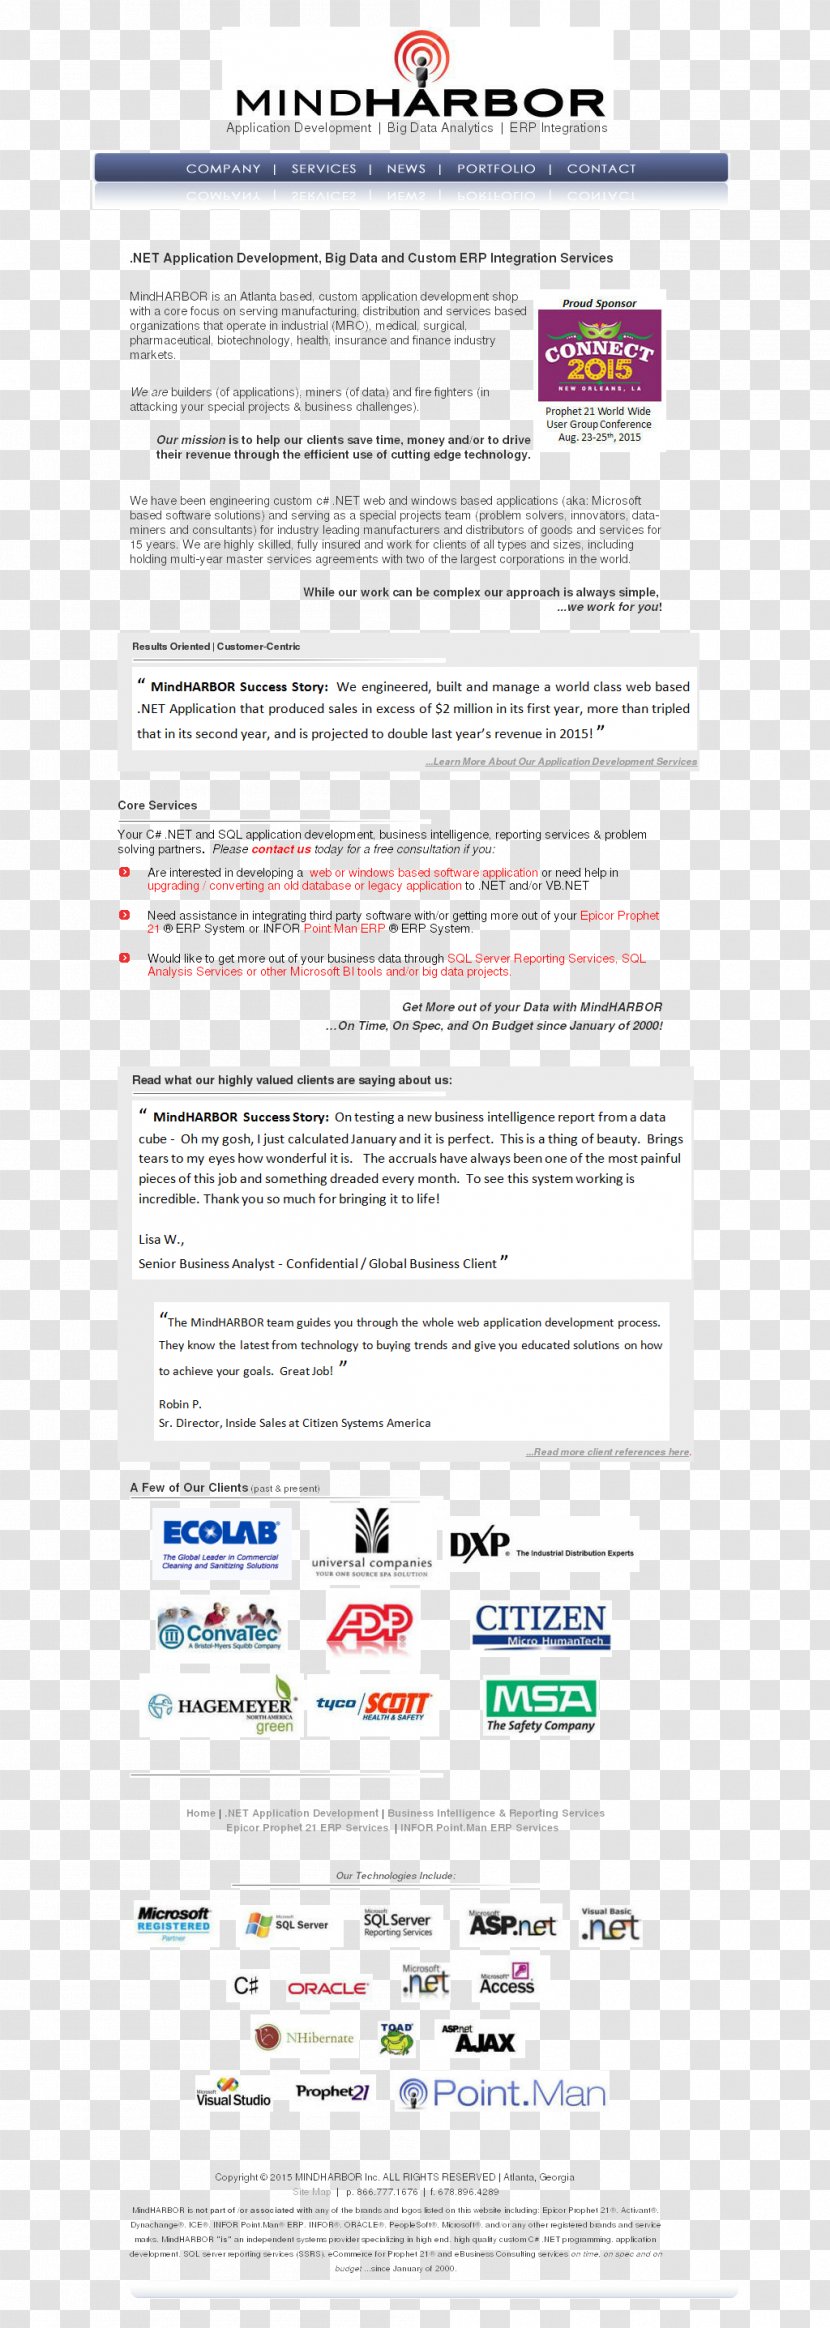 Web Page Owler Logo Revenue Font - Text - Microsoft Corporation Transparent PNG